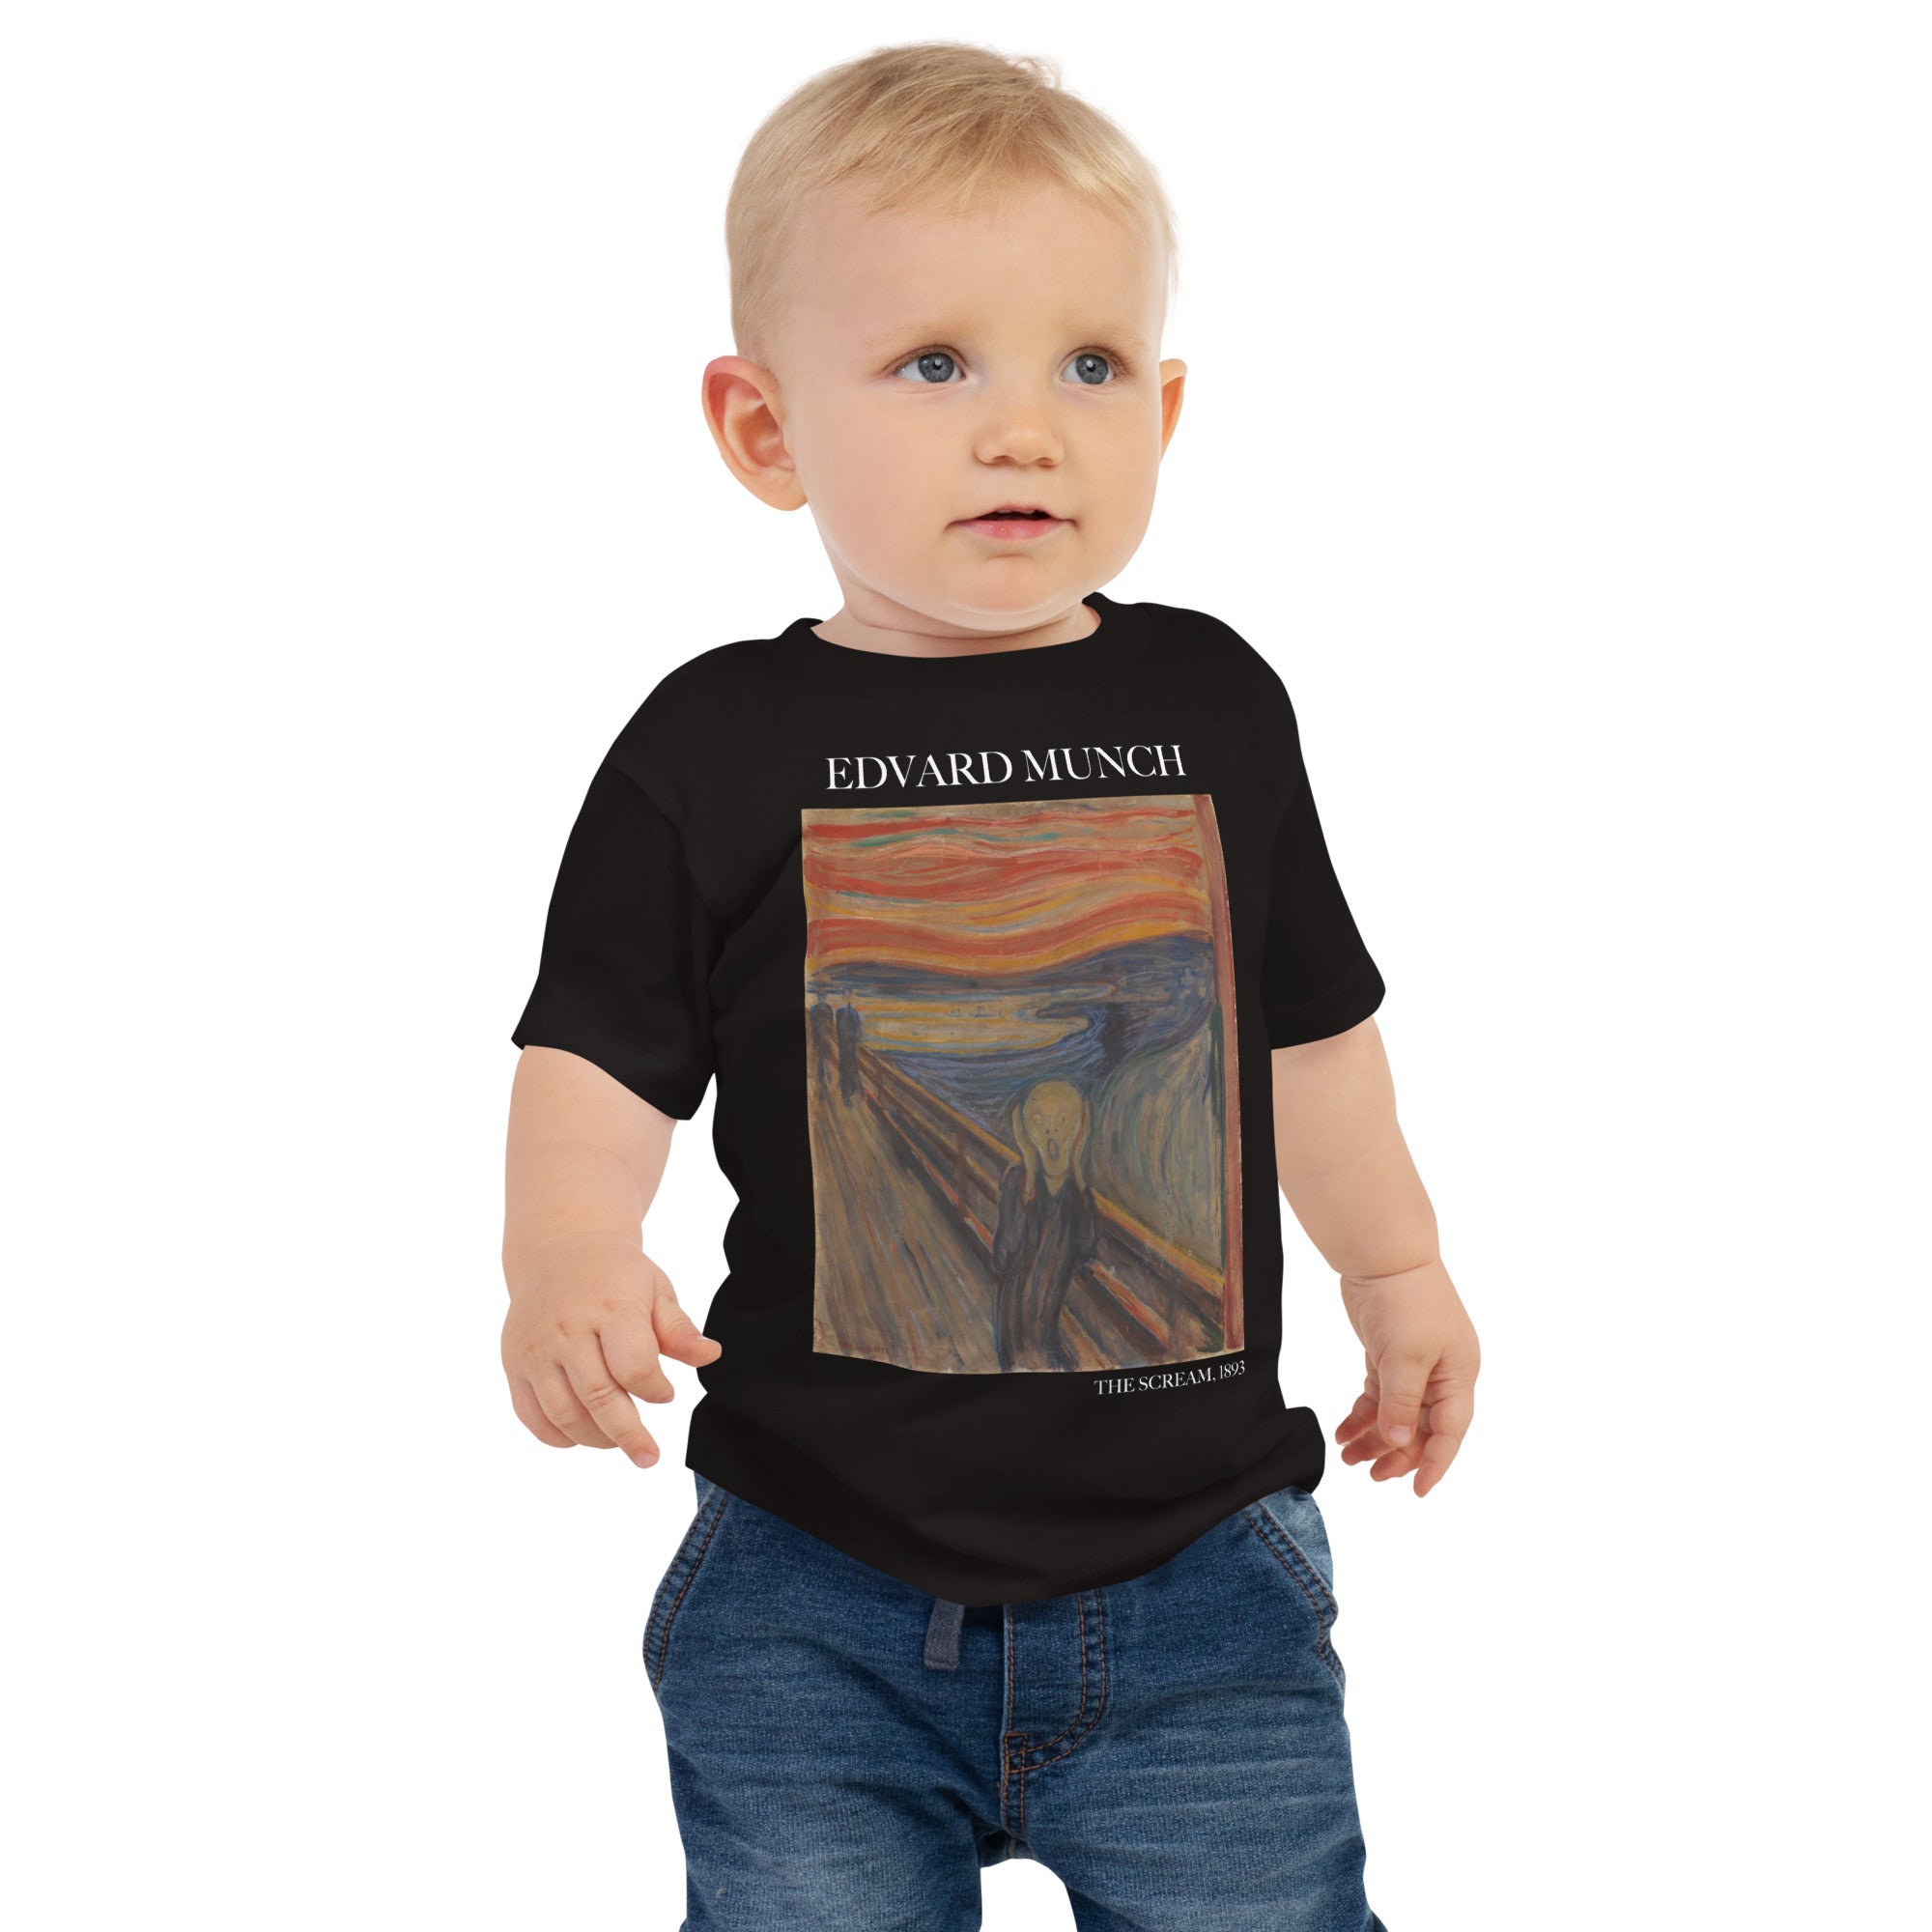 Edvard Munch 'The Scream' Famous Painting Baby Staple T-Shirt | Premium Baby Art Tee